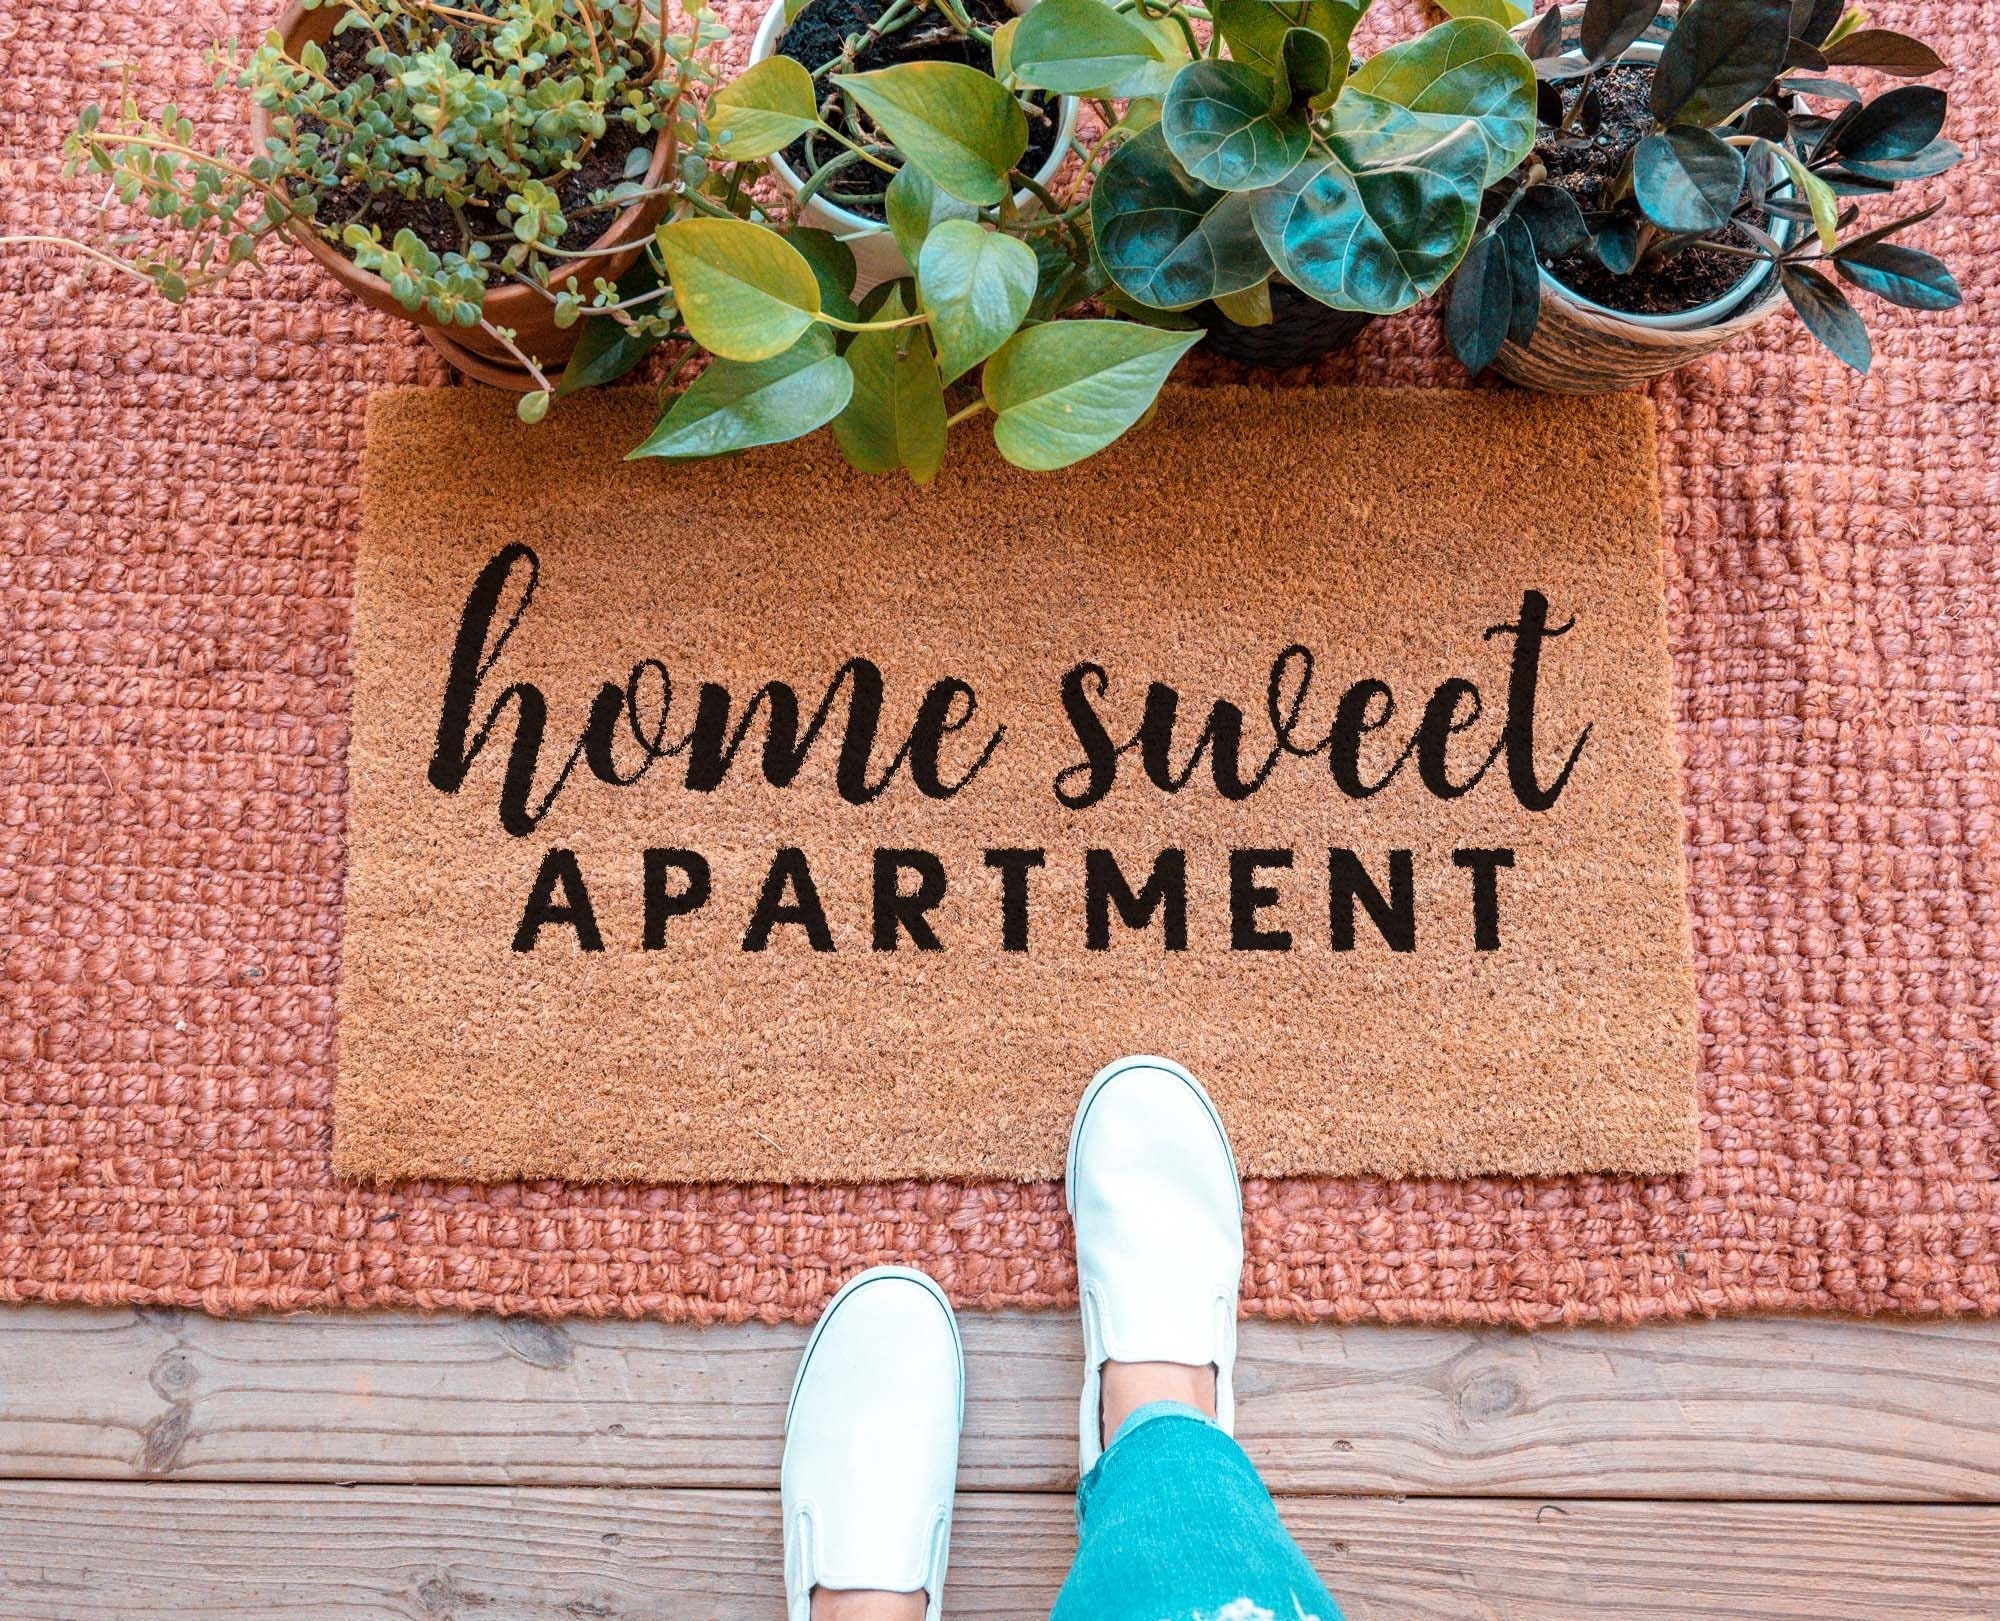 Home Sweet Apartment Welcome Mat Doormat, Zazzle